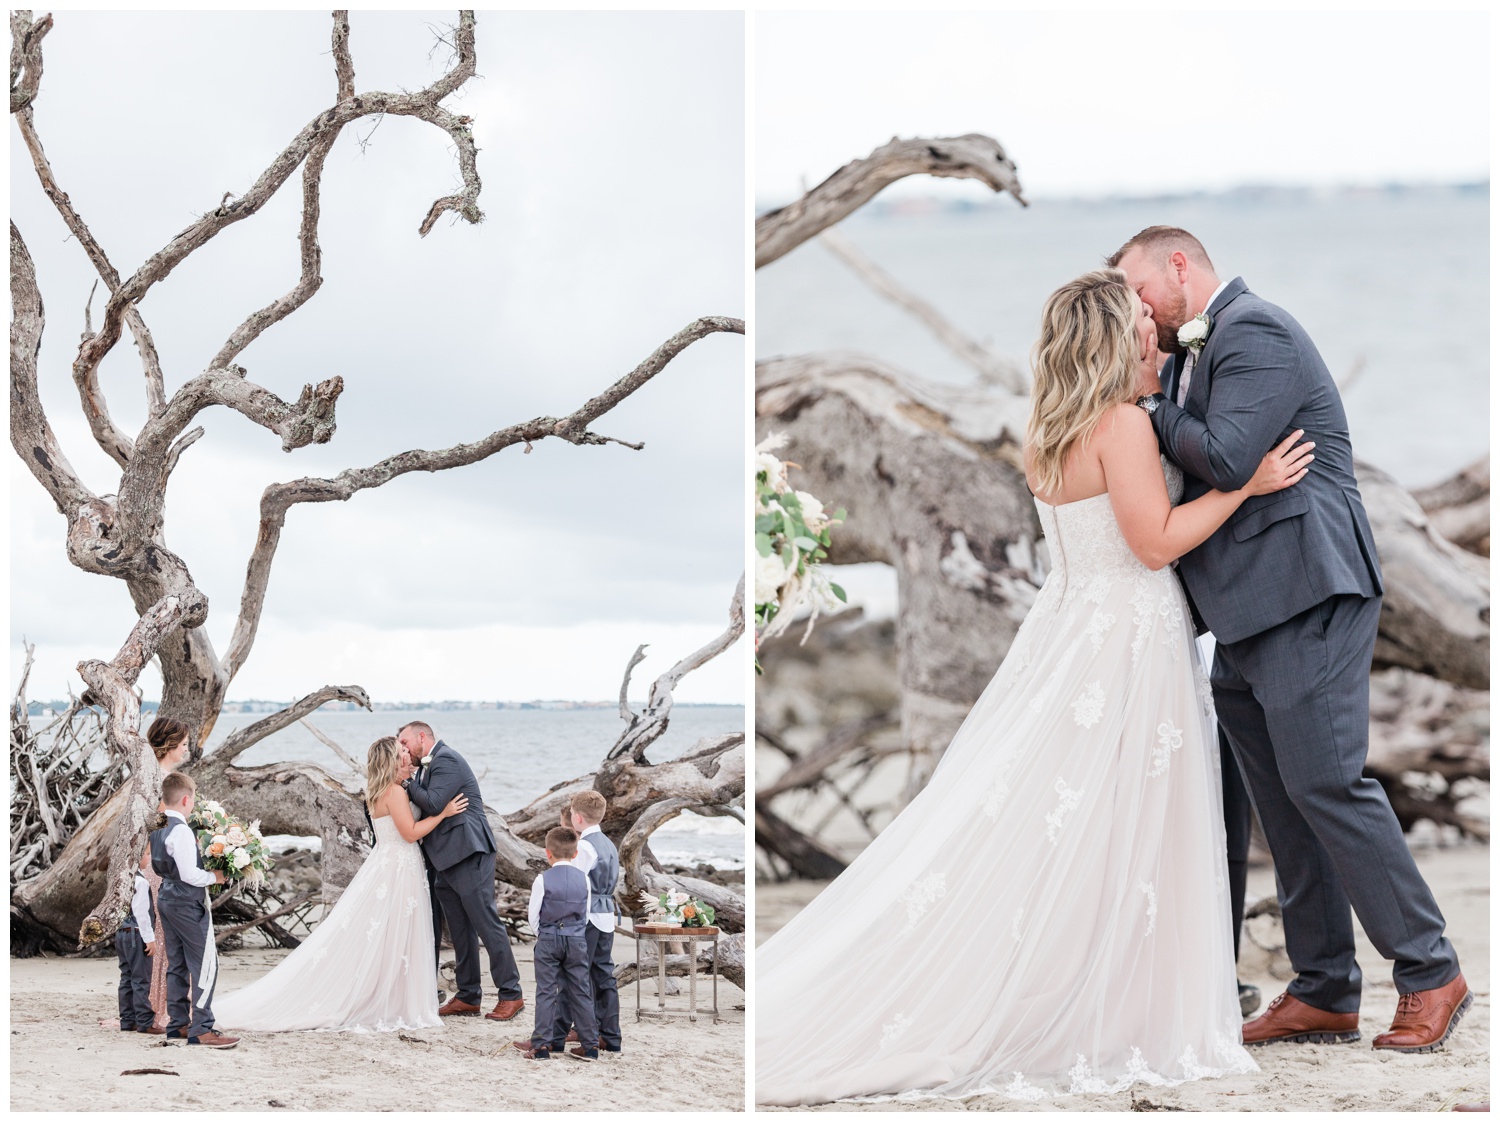 Kristen + Chris' elopement on Jekyll Island, Savannah